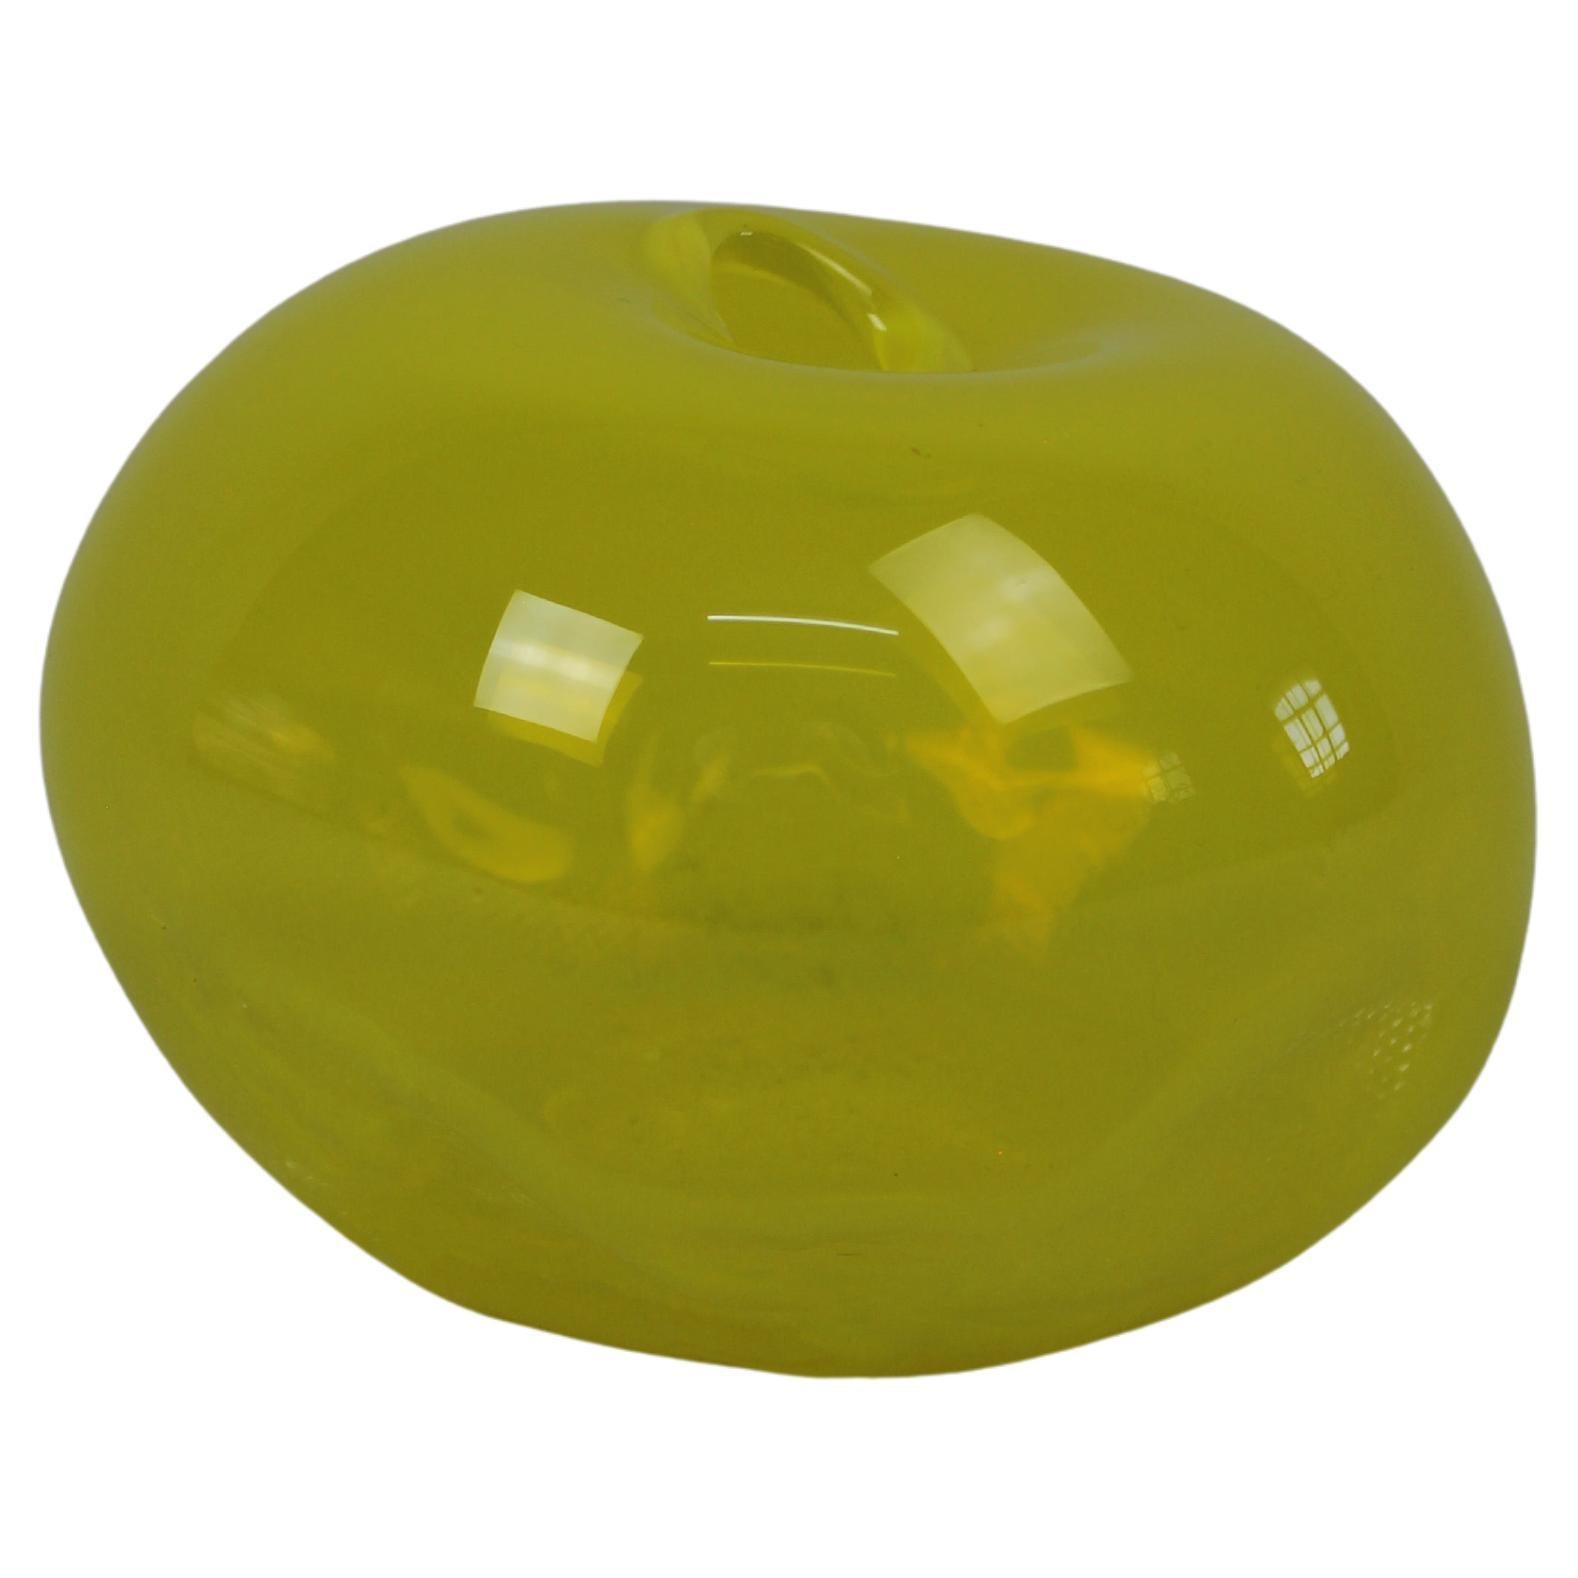 Formes 1/2 Ltr, jaune citron, objet en verre fait à la main par Vogel Studio